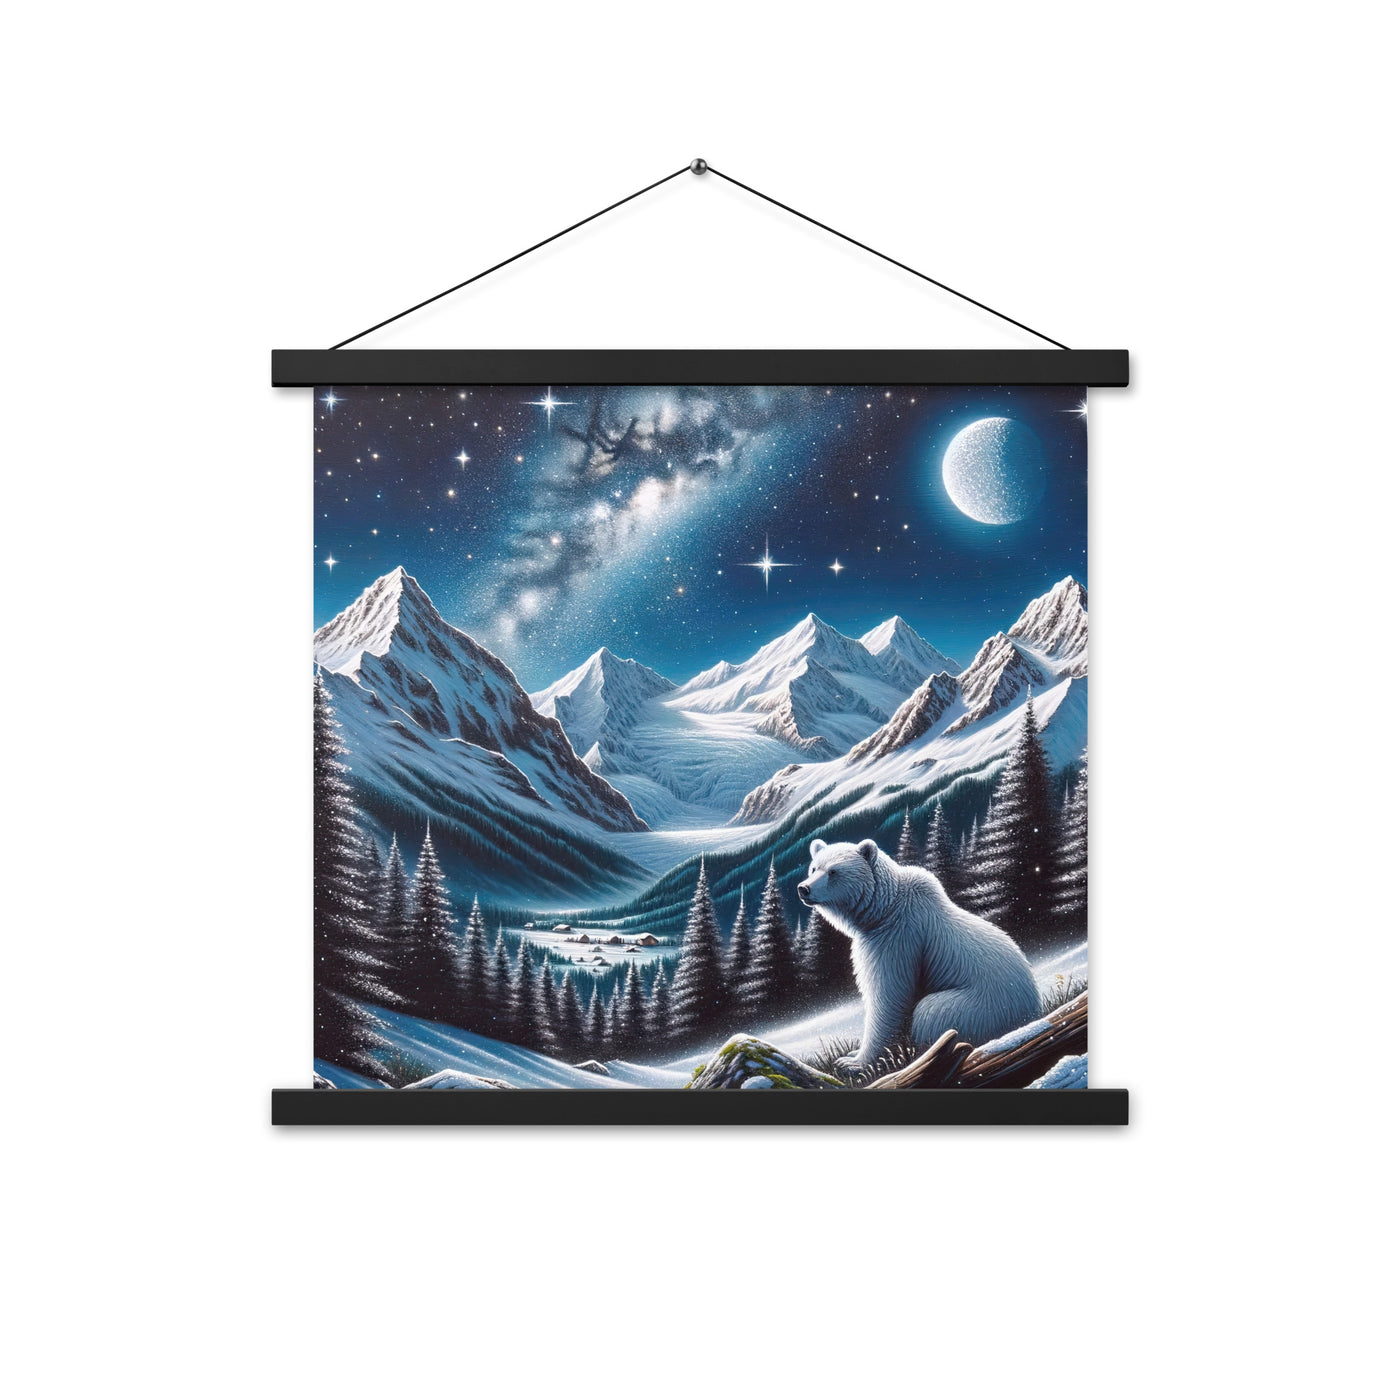 Sternennacht und Eisbär: Acrylgemälde mit Milchstraße, Alpen und schneebedeckte Gipfel - Premium Poster mit Aufhängung camping xxx yyy zzz 45.7 x 45.7 cm